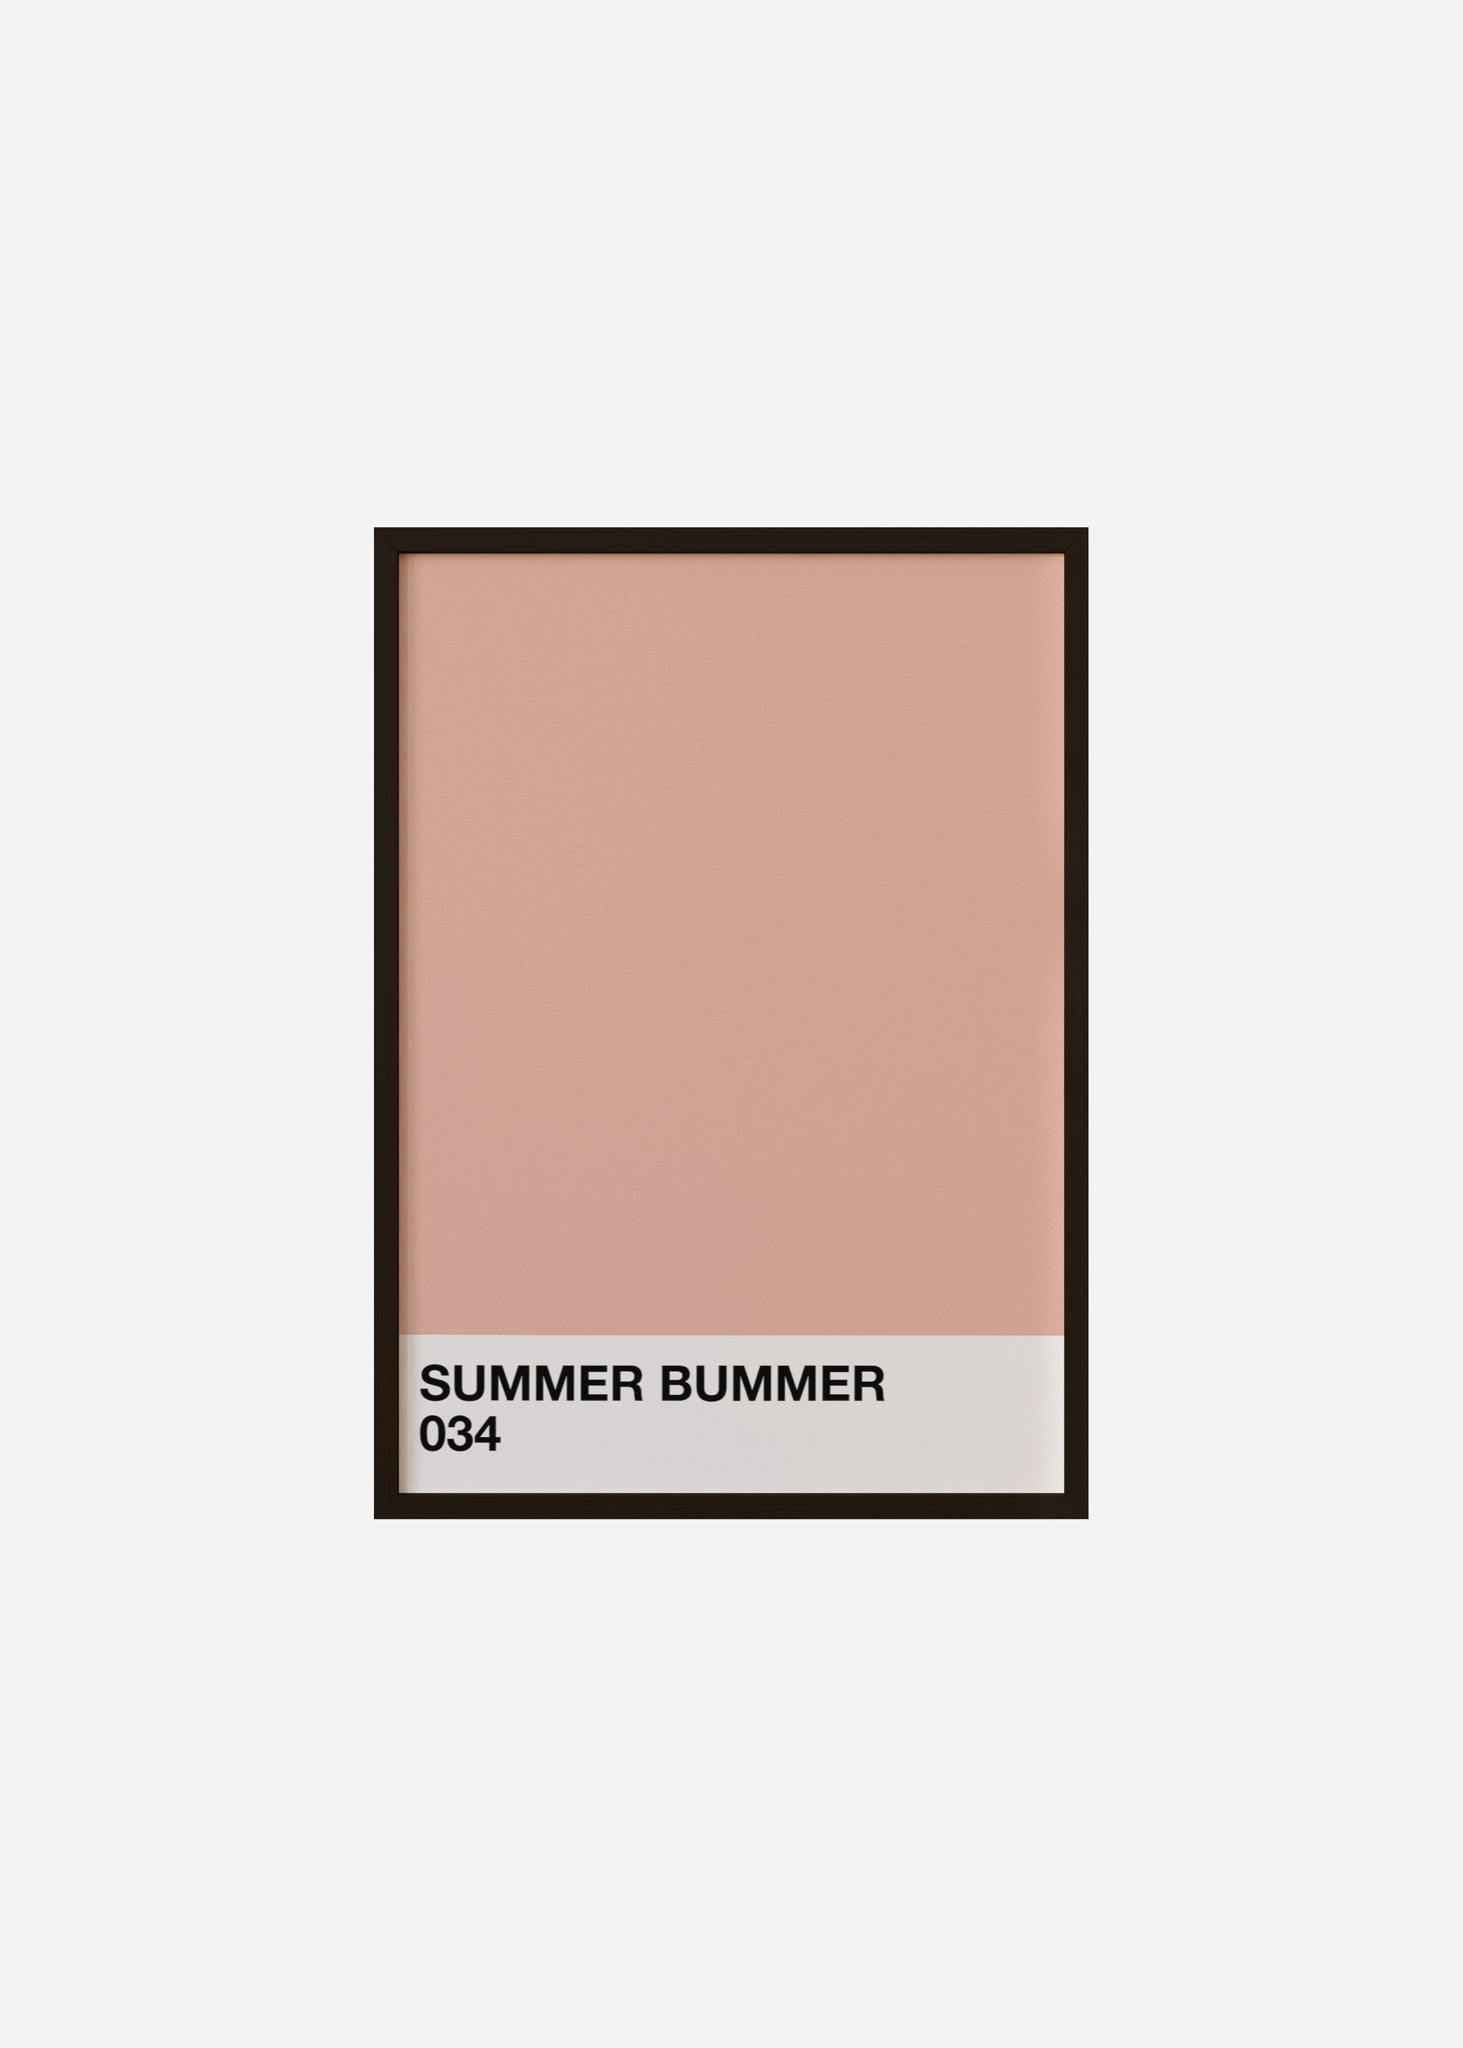 summer bummer Framed Print